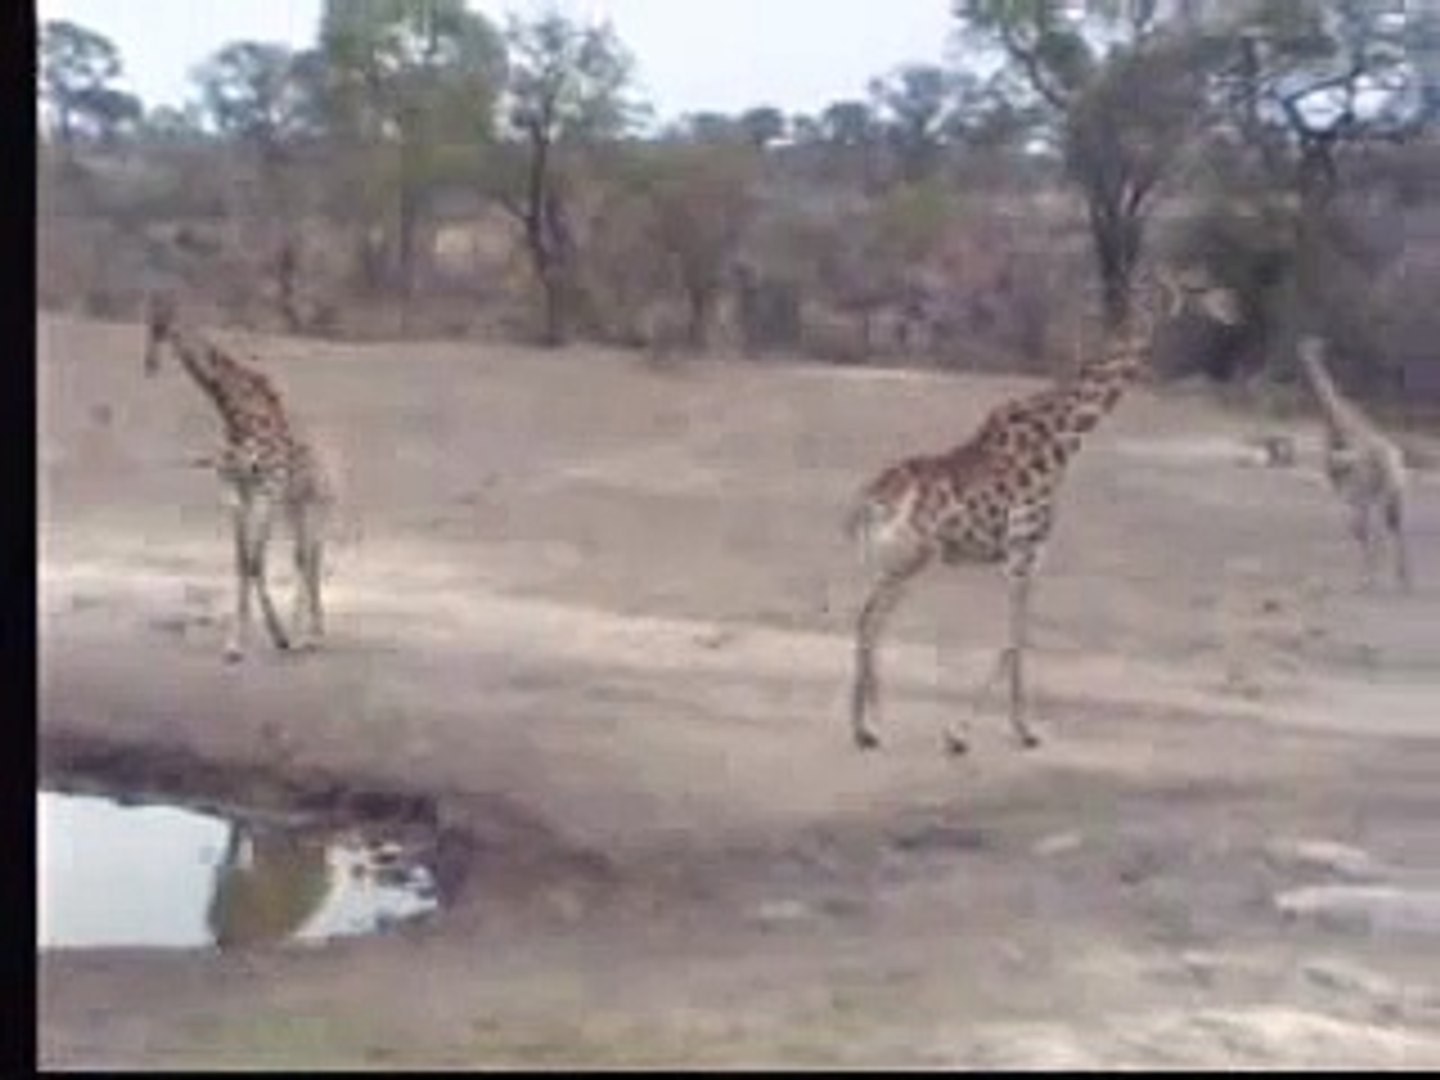 Giraffes Africa 10-20-06